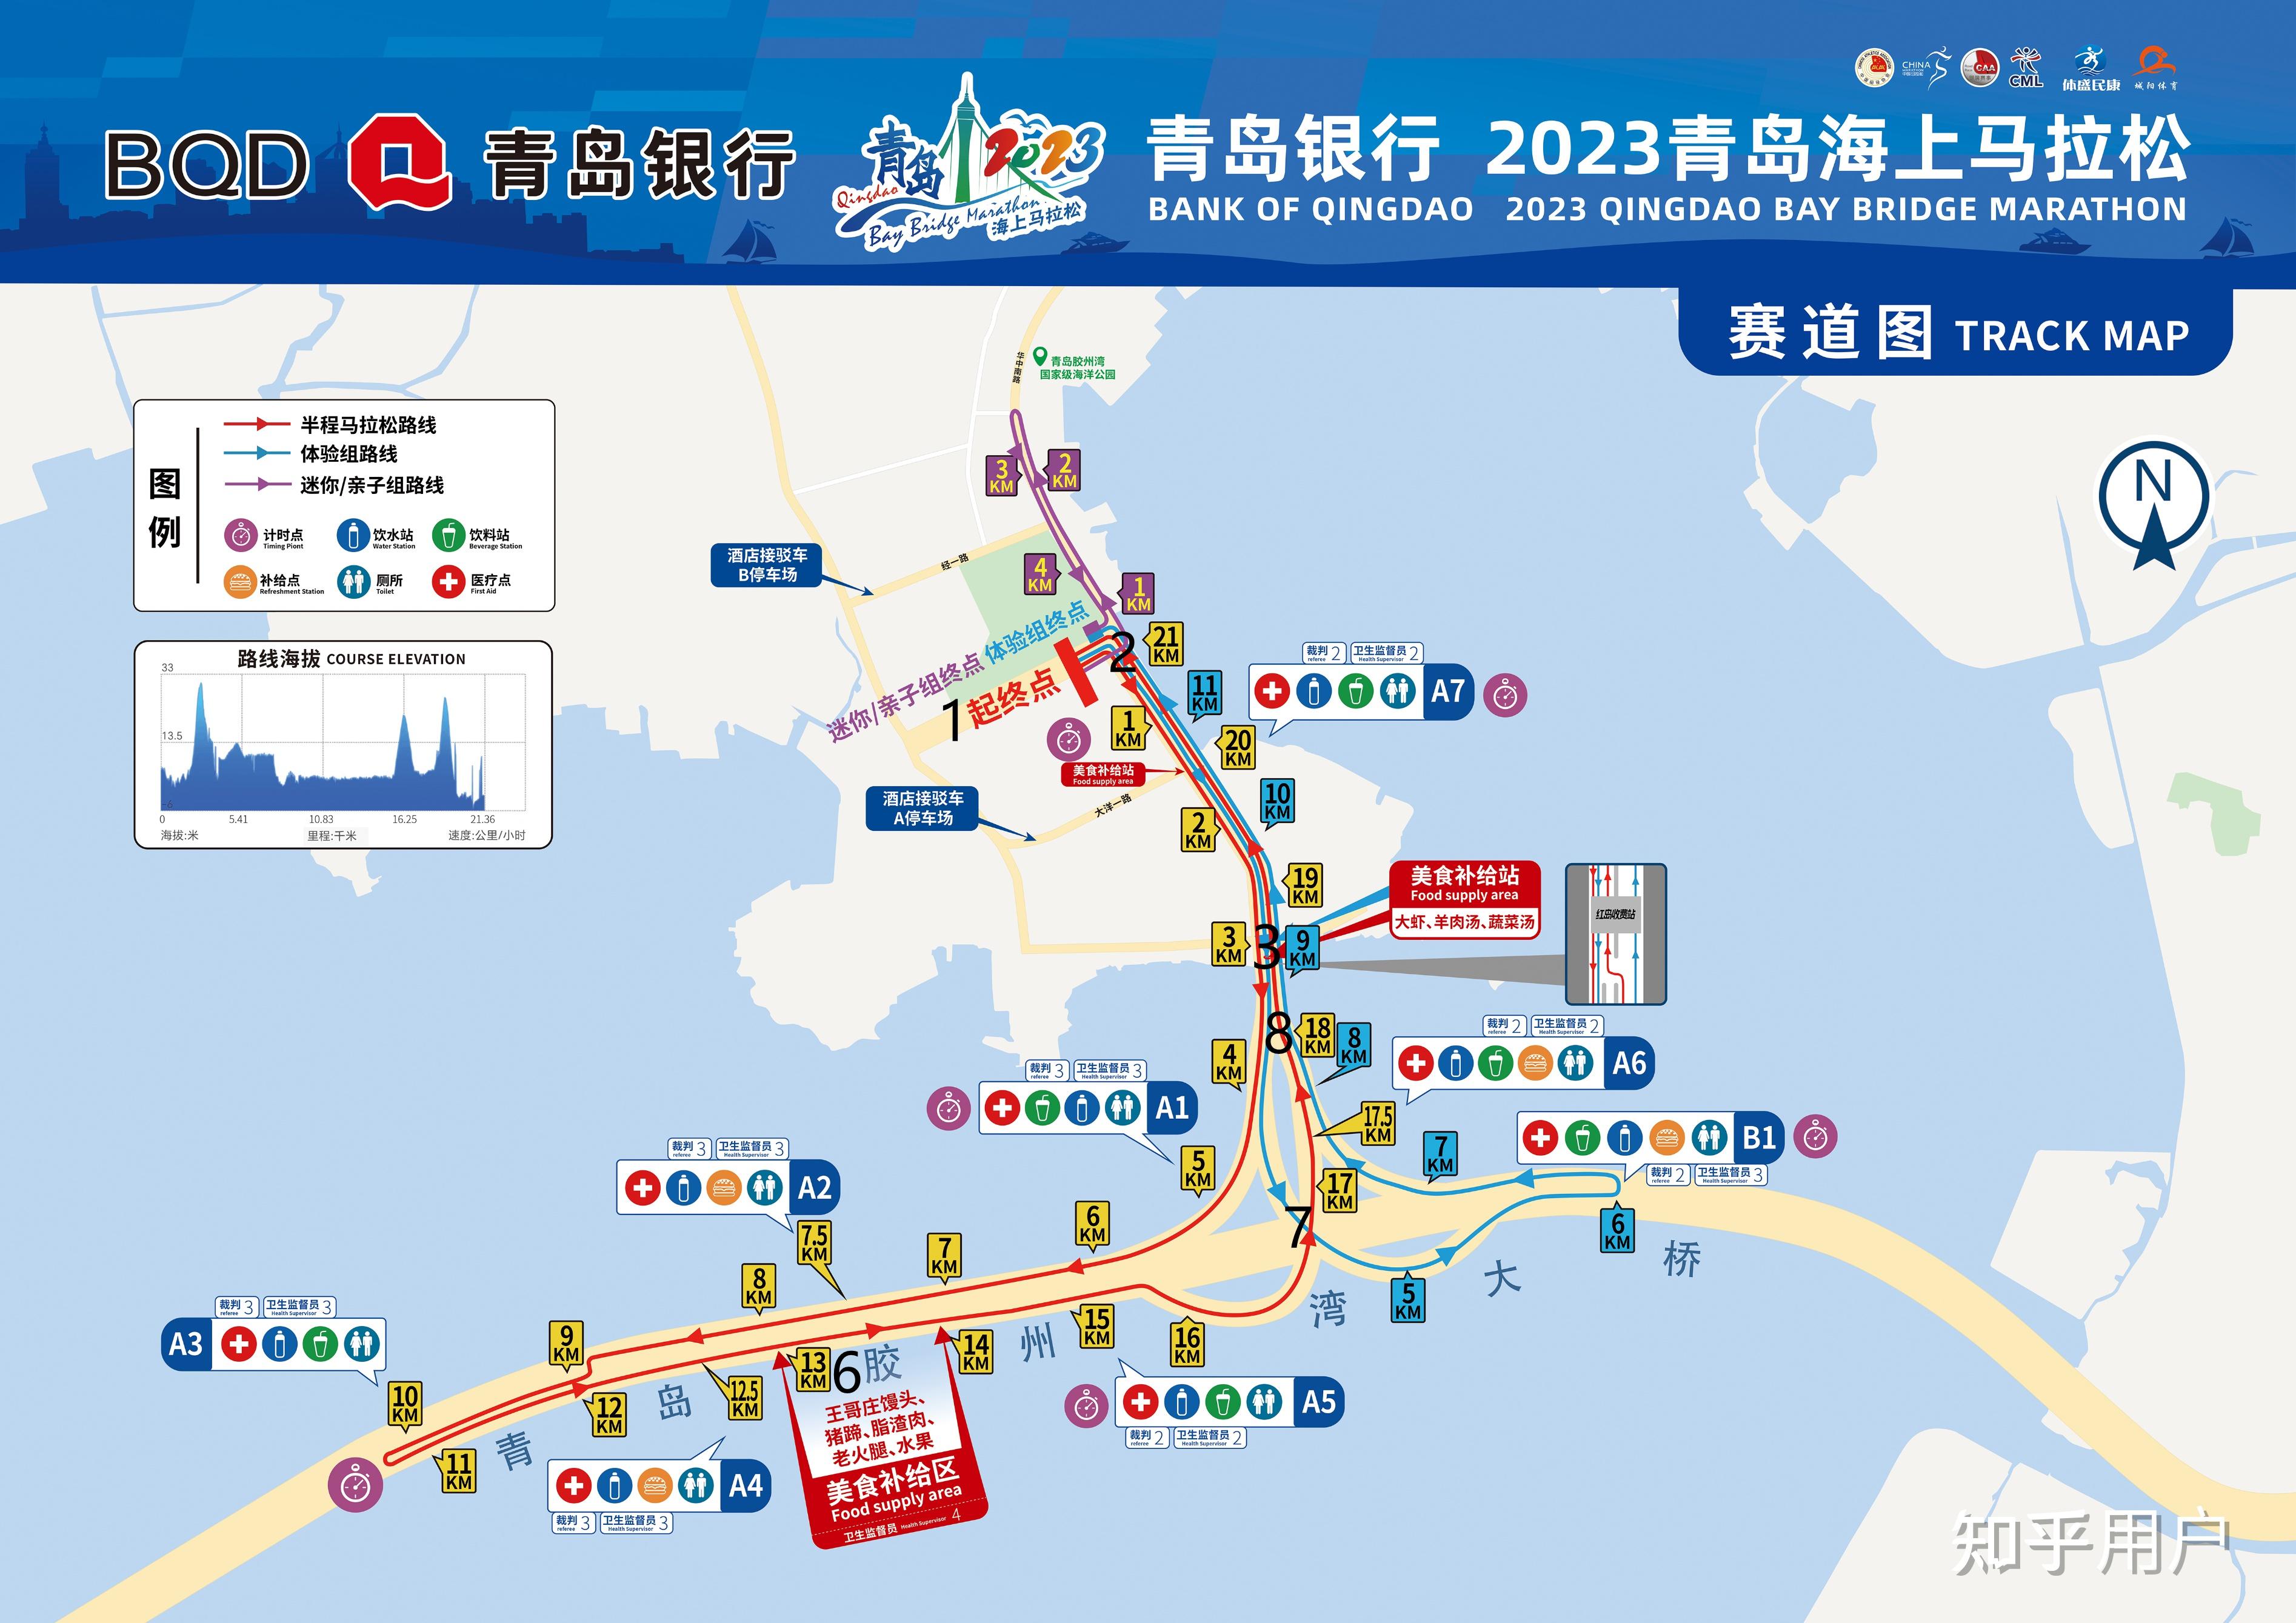 2023青岛海上马拉松10月15日举办作为跑者你有哪些感受